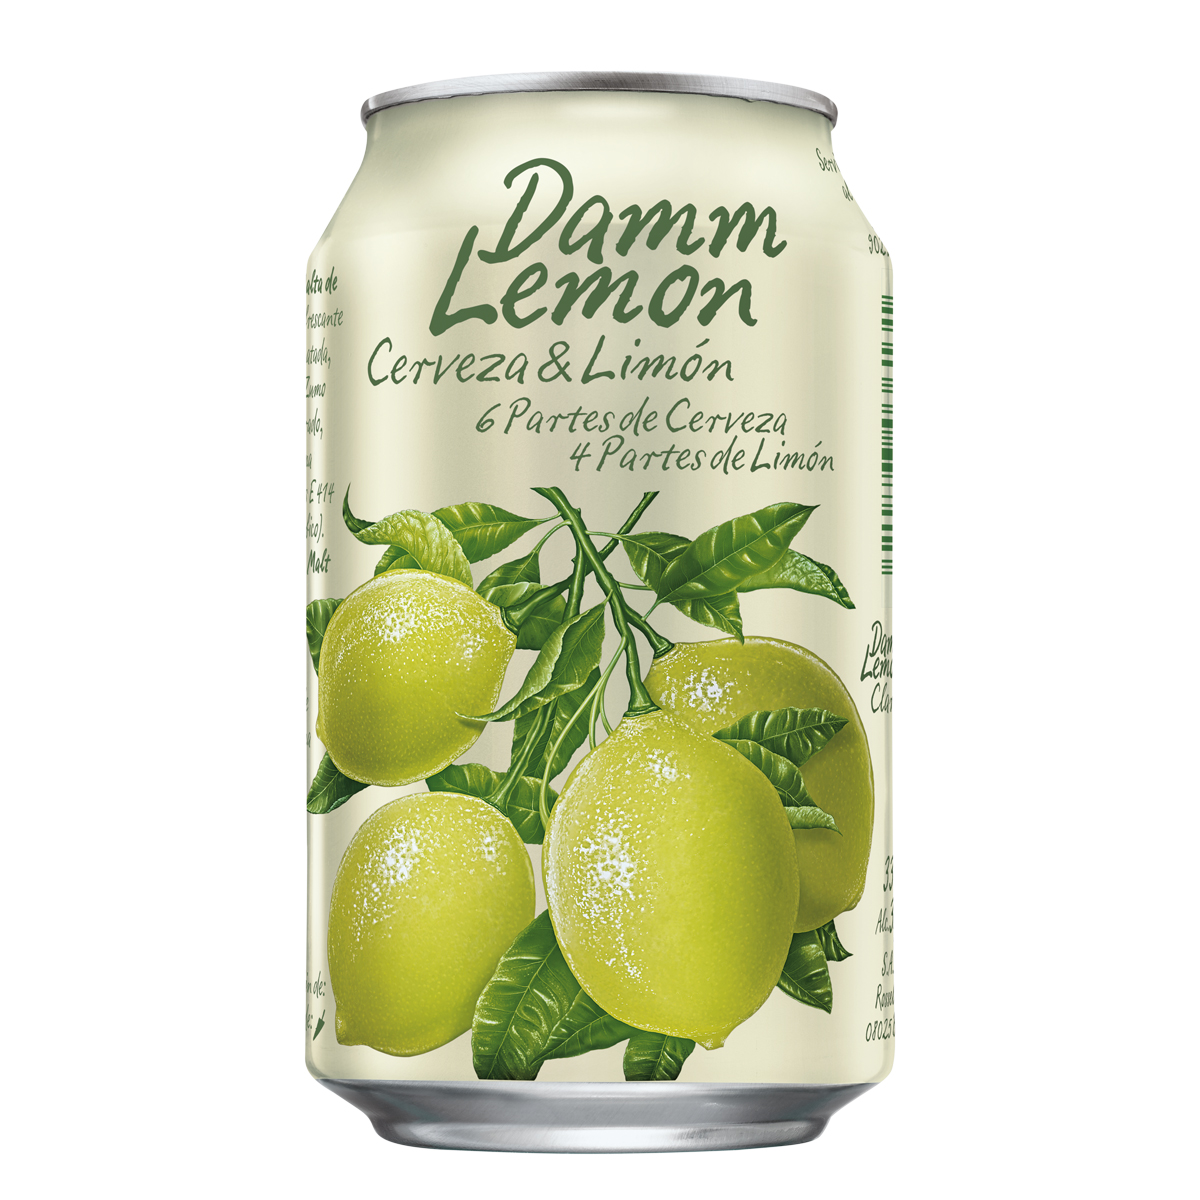 33cl damm lemon beer can